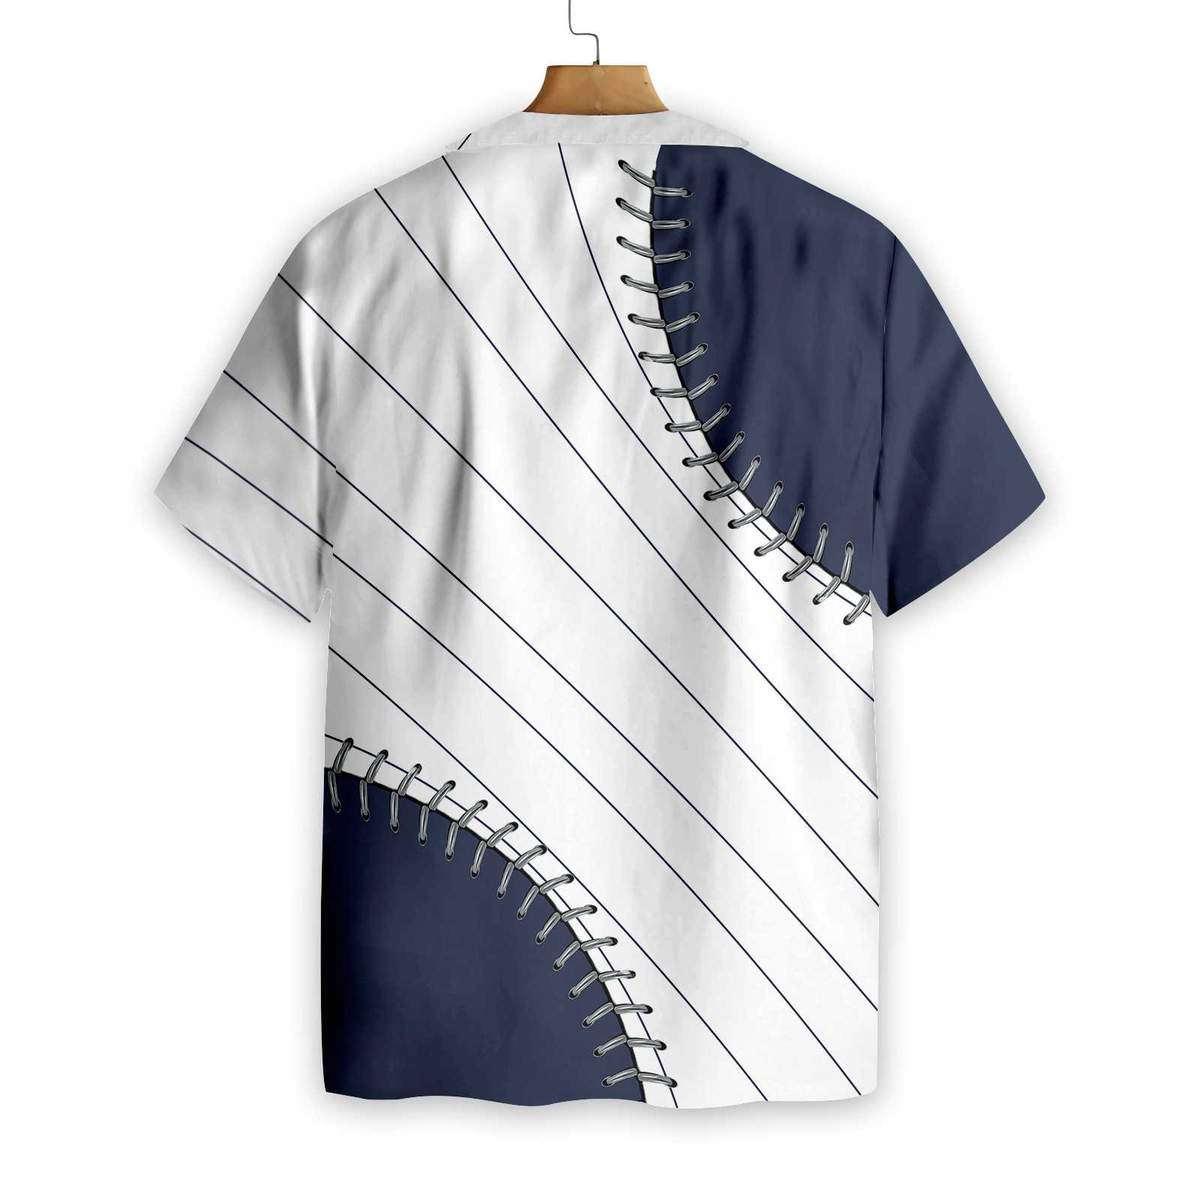 Baseball You are killin me small Navy Blue Hawaiian Shirt1